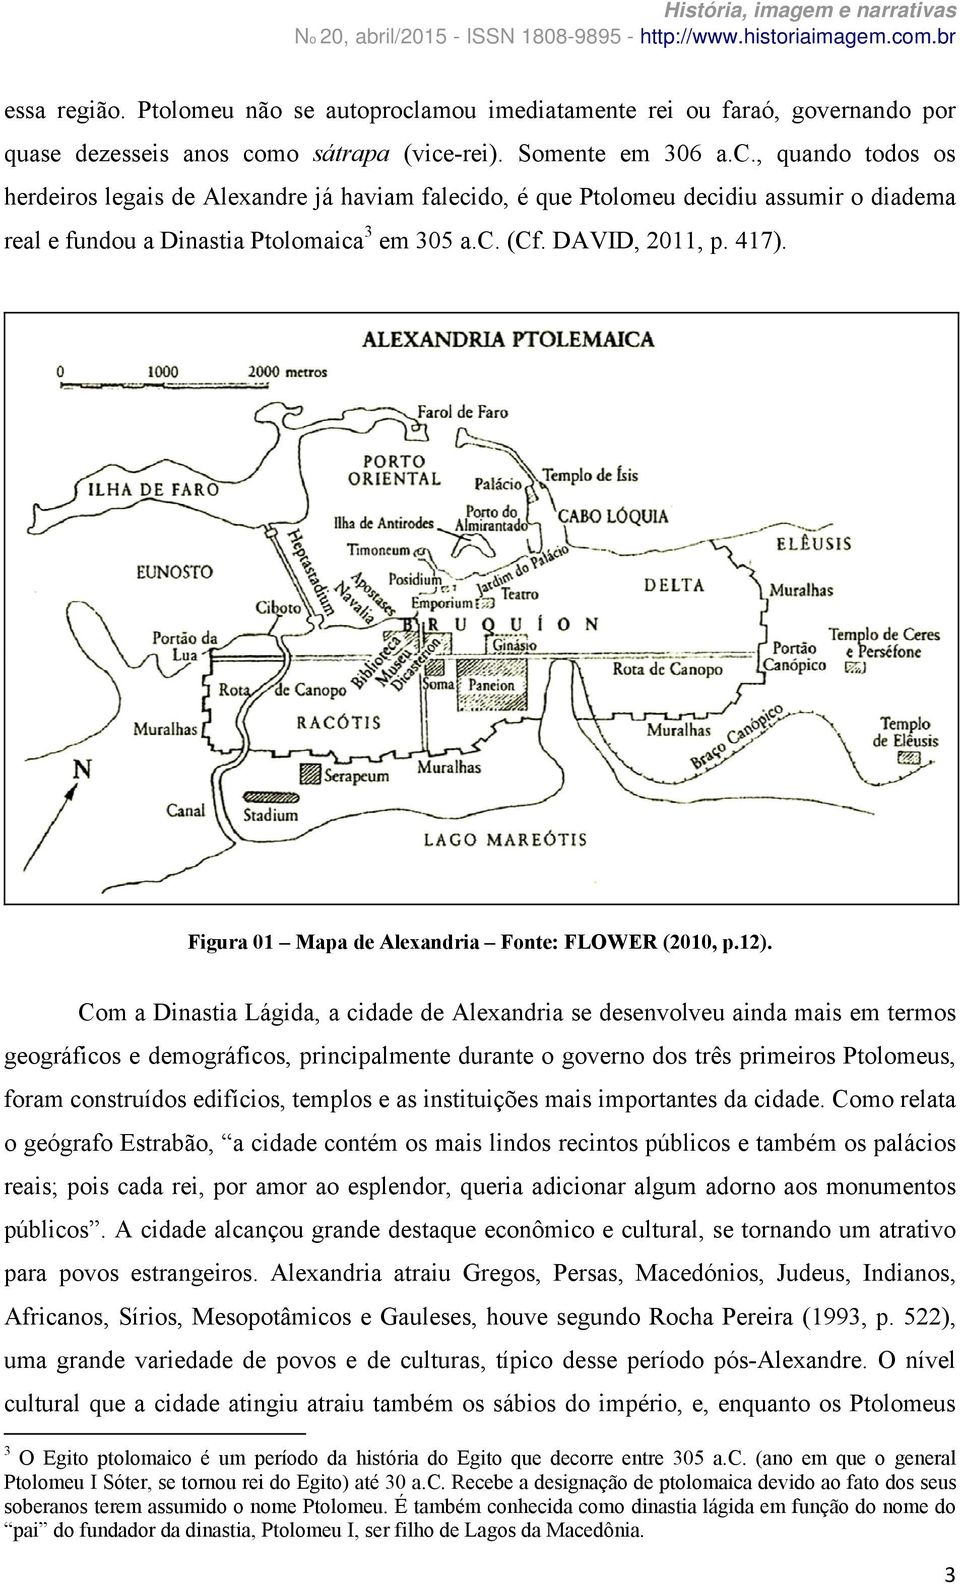 Com a Dinastia Lágida, a cidade de Alexandria se desenvolveu ainda mais em termos geográficos e demográficos, principalmente durante o governo dos três primeiros Ptolomeus, foram construídos